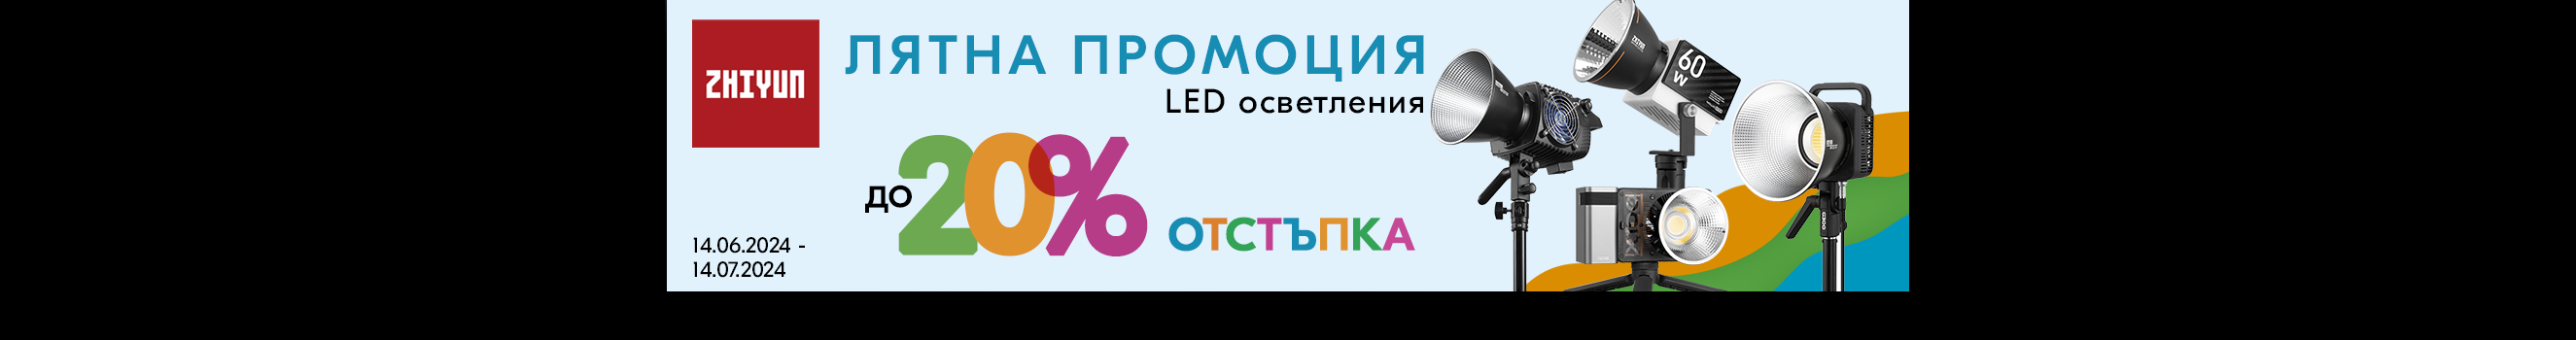 Вземете LED осветление Zhiyun за фотография и видеография на специални цени от до 14.07 